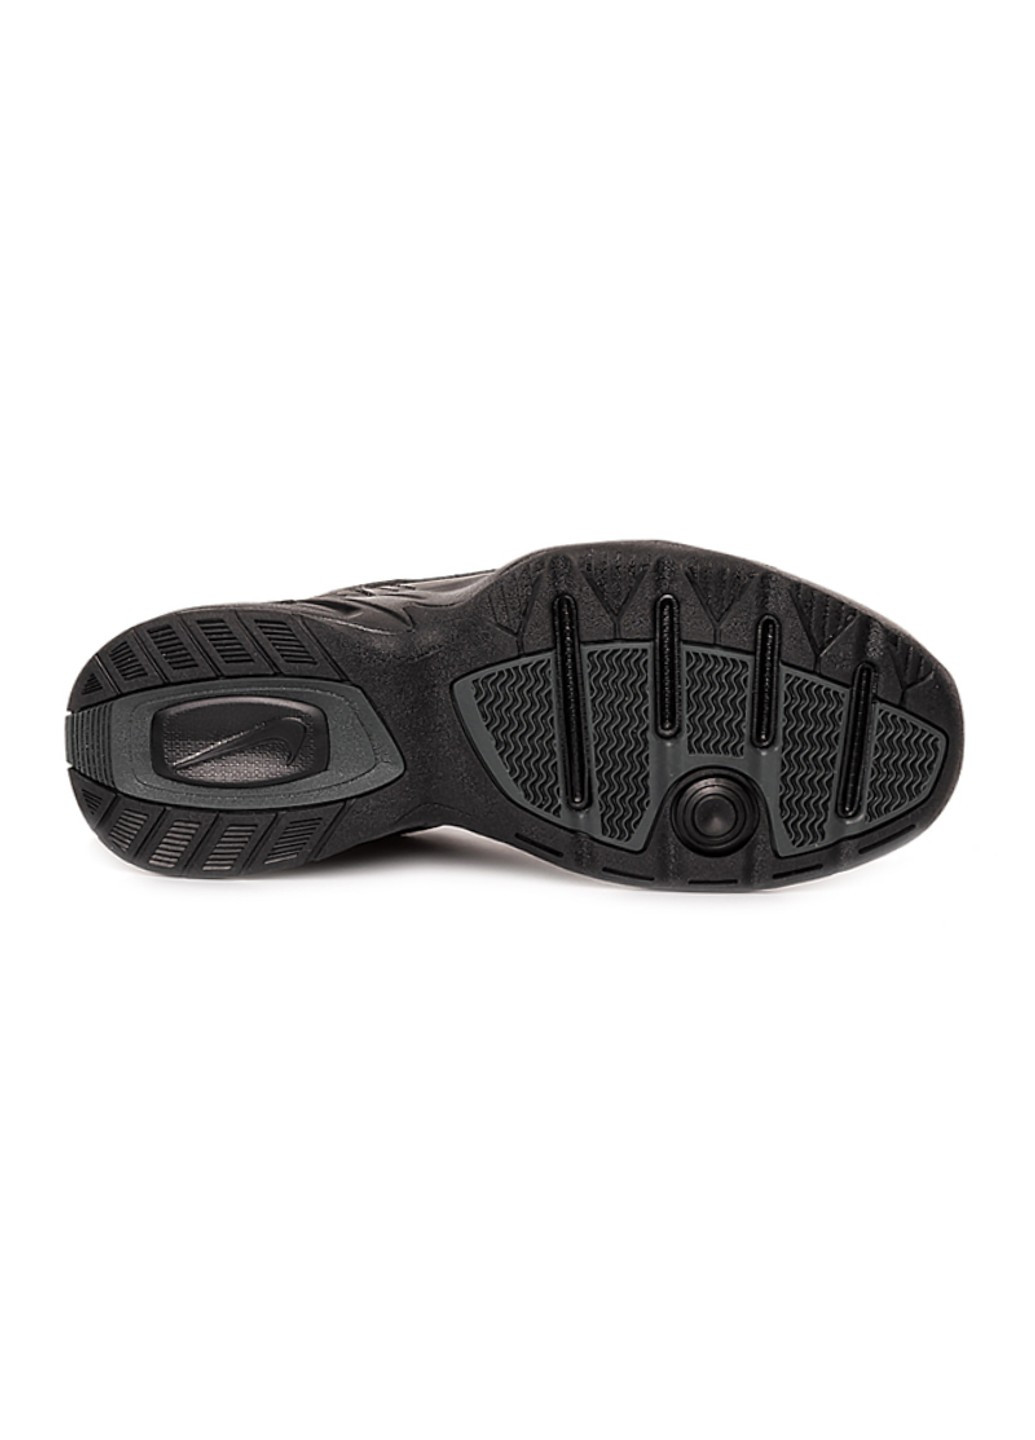 Черные демисезонные кроссовки air monarch iv Nike